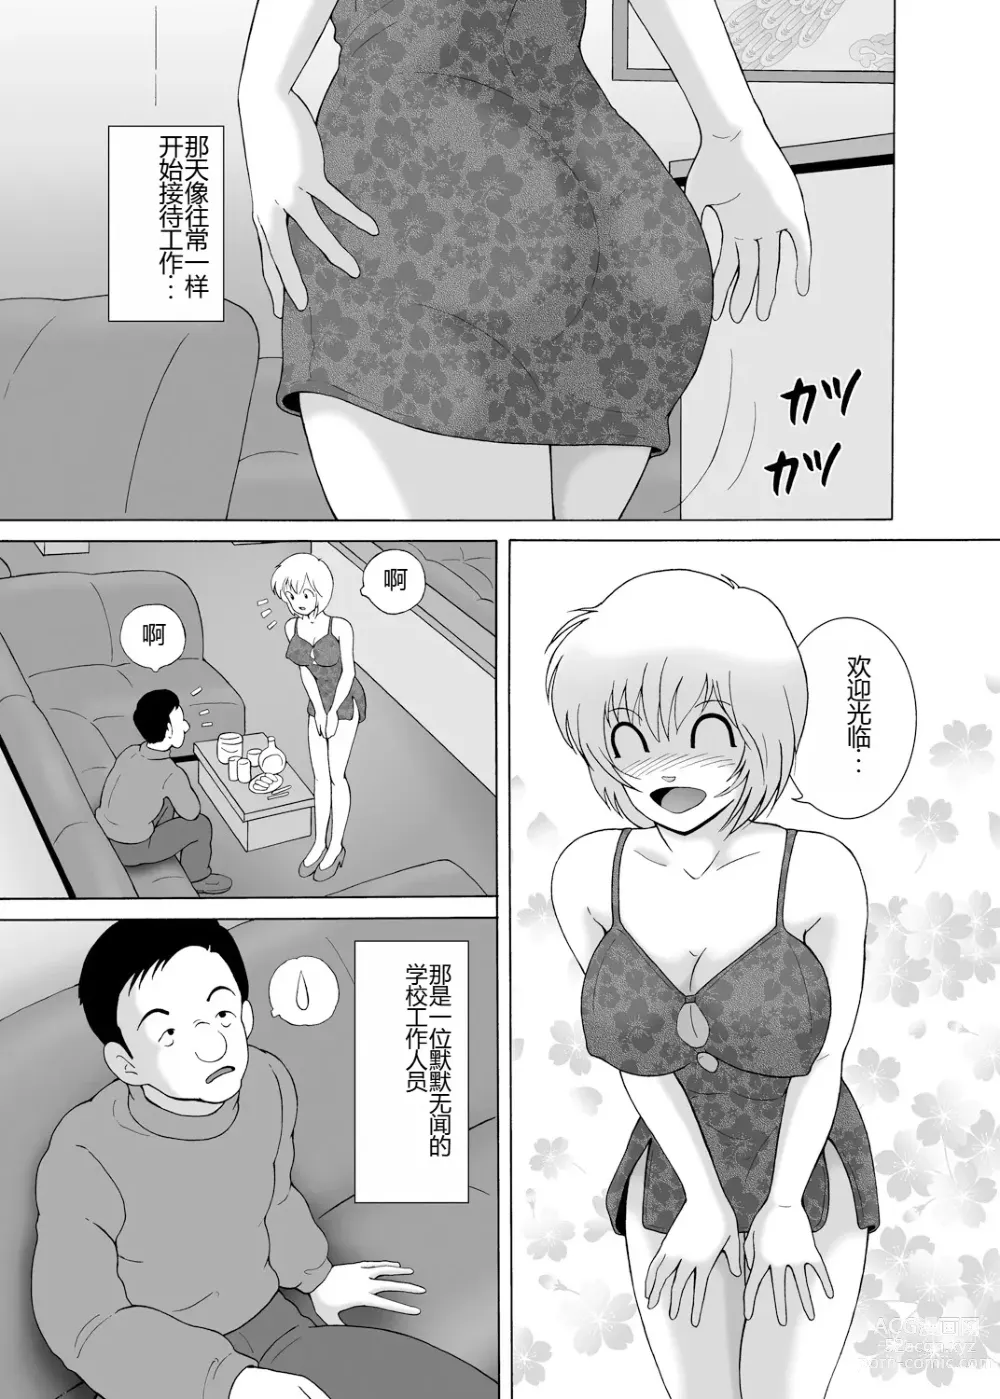 Page 9 of manga Yachin Tainou Bijin Shimai Kyousei Nikutai Harai